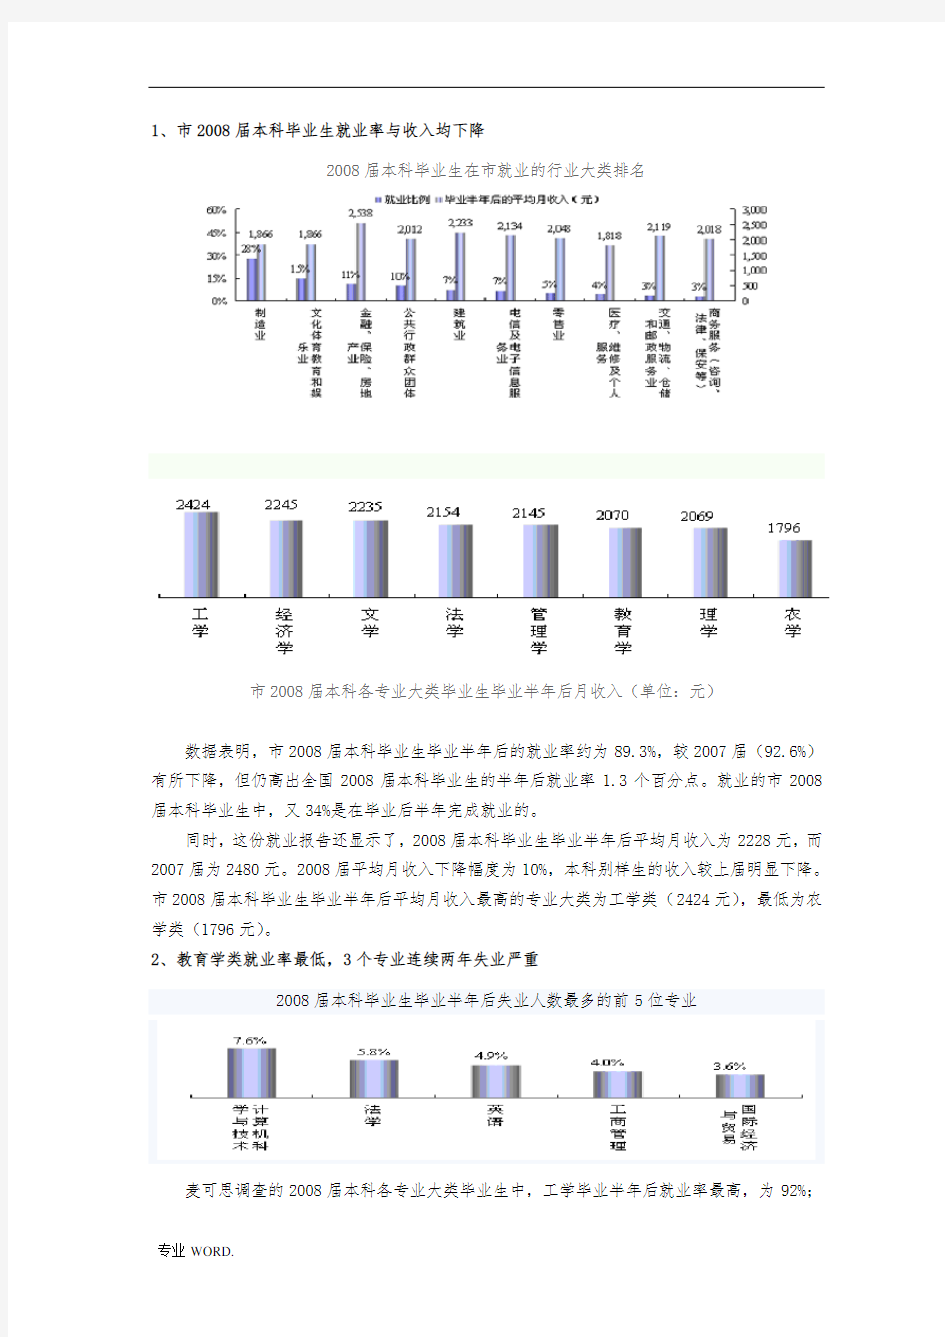 重庆市大学生就业情况统计分析报告